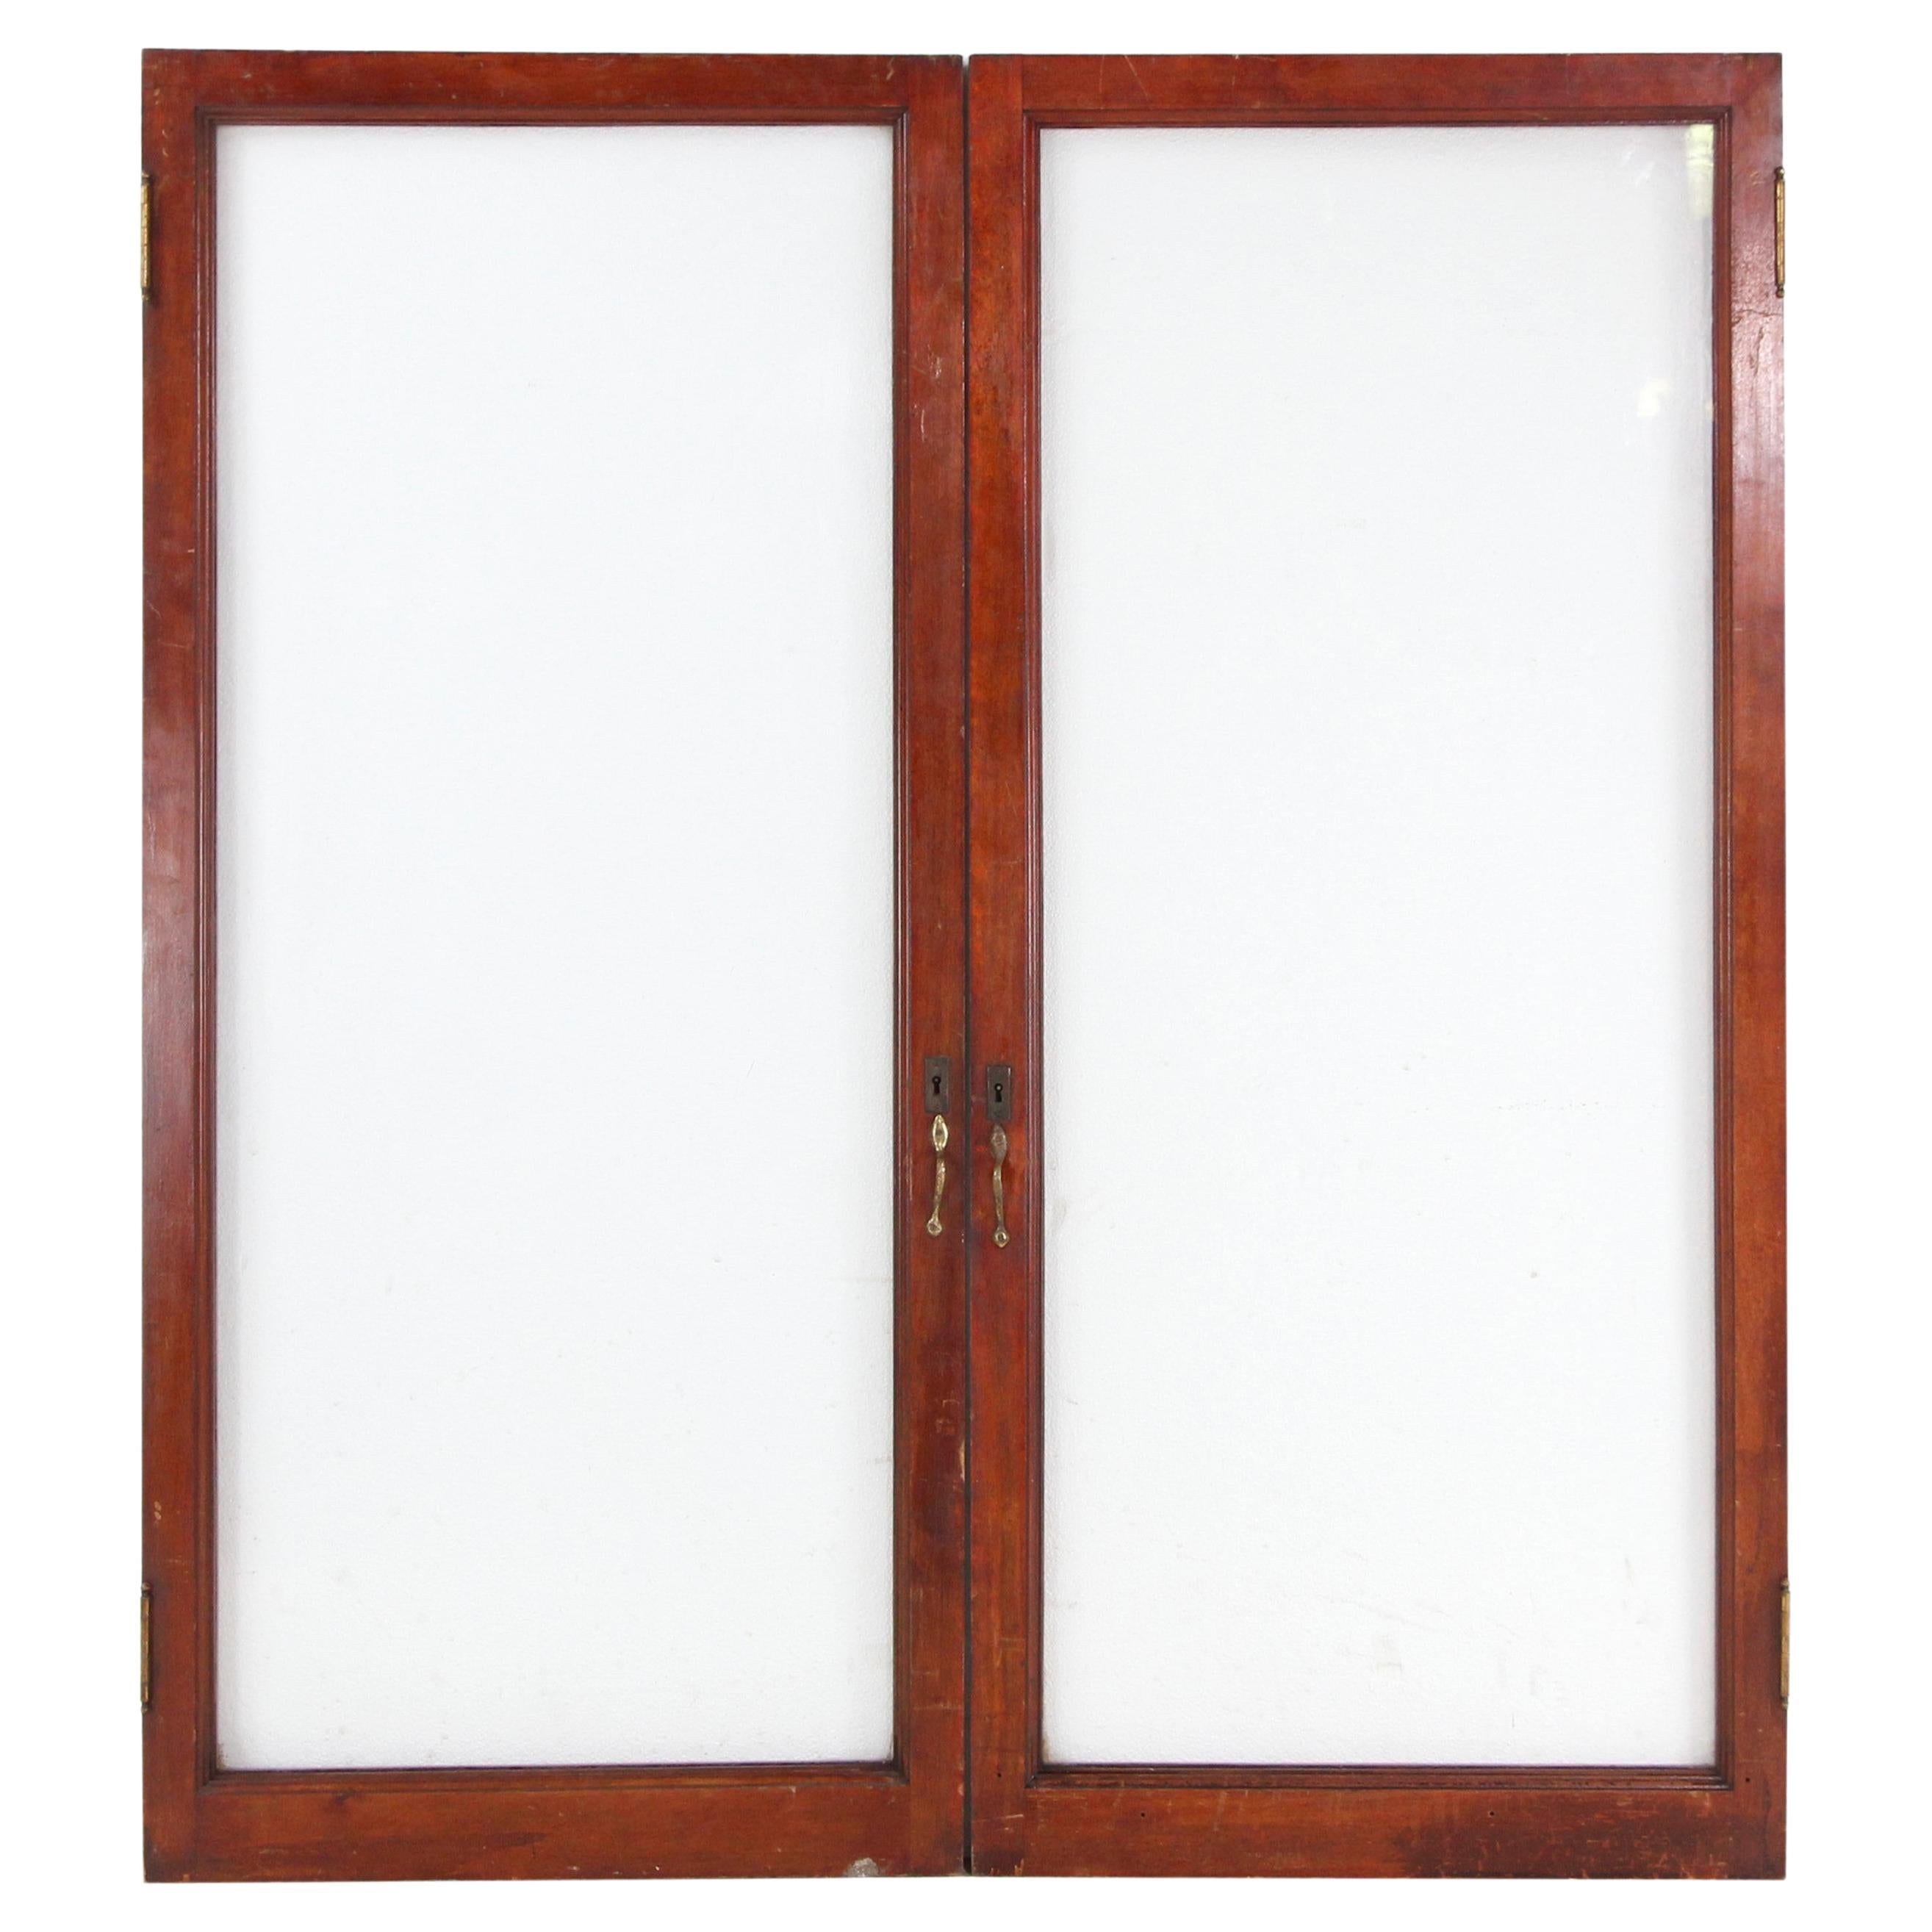 Ein Paar Mahagoni-Türen mit Holzrahmen 53 x 47,5